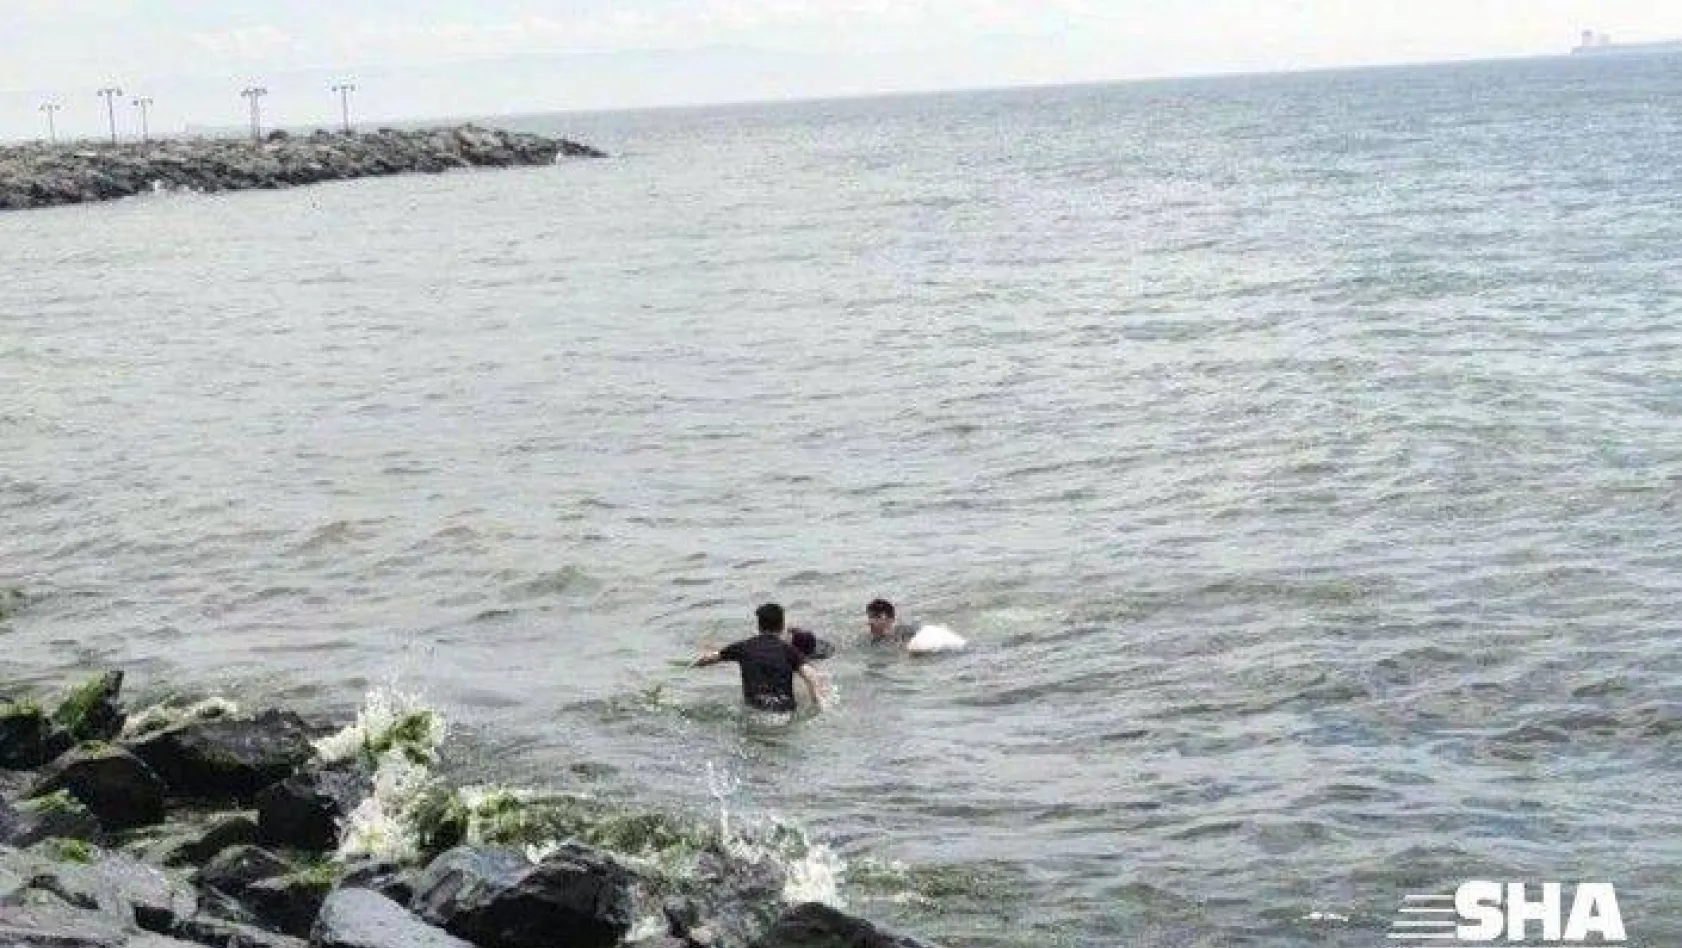 Denize atlayarak intihar girişiminde bulunan kadını polisler kurtardı